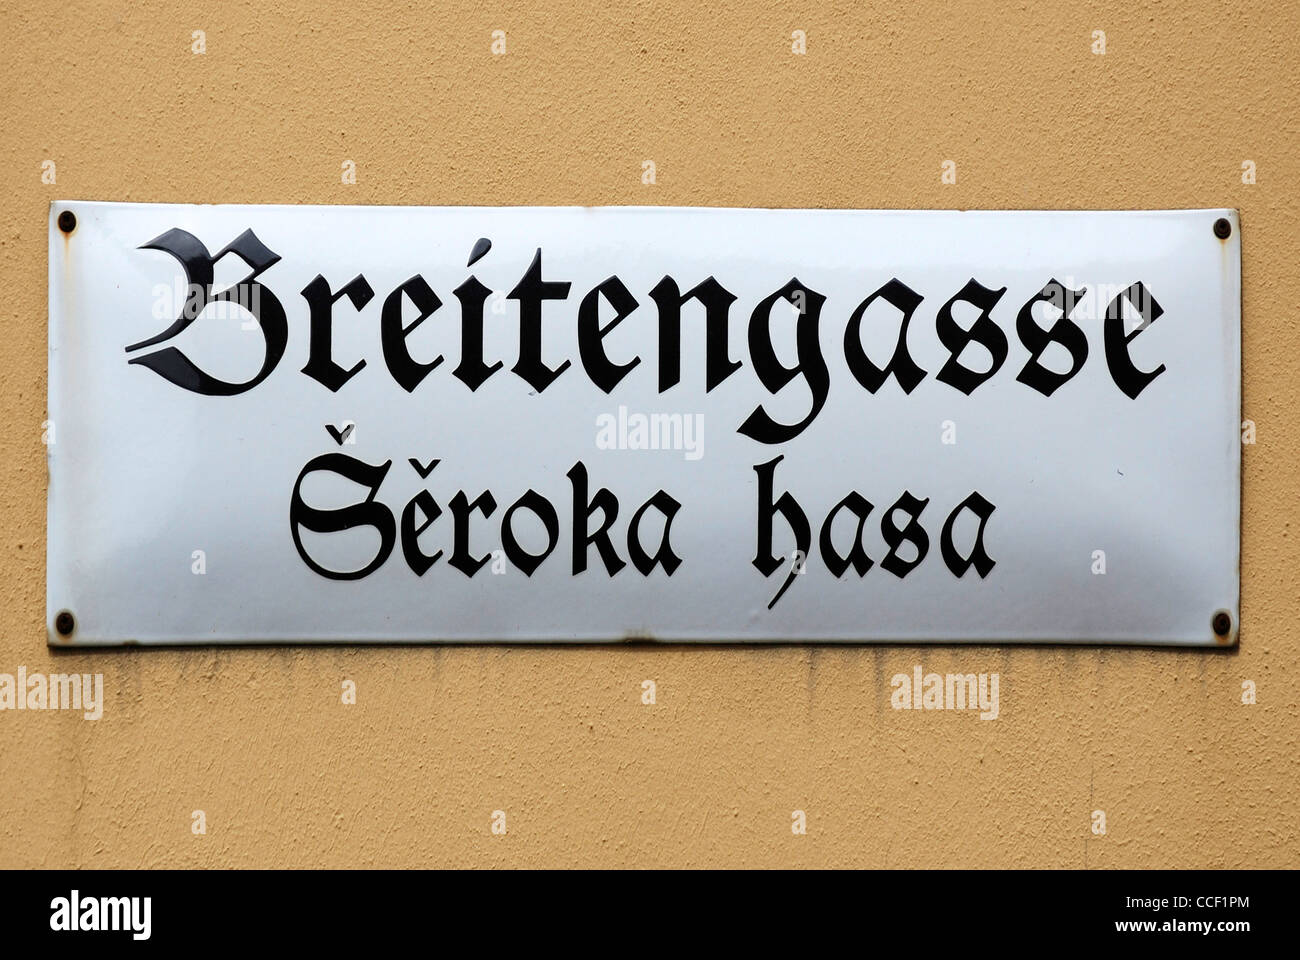 Un cartello stradale di Bautzen in lingua tedesca e in lingua serba al Breitengasse - Seroka presentauna. Foto Stock